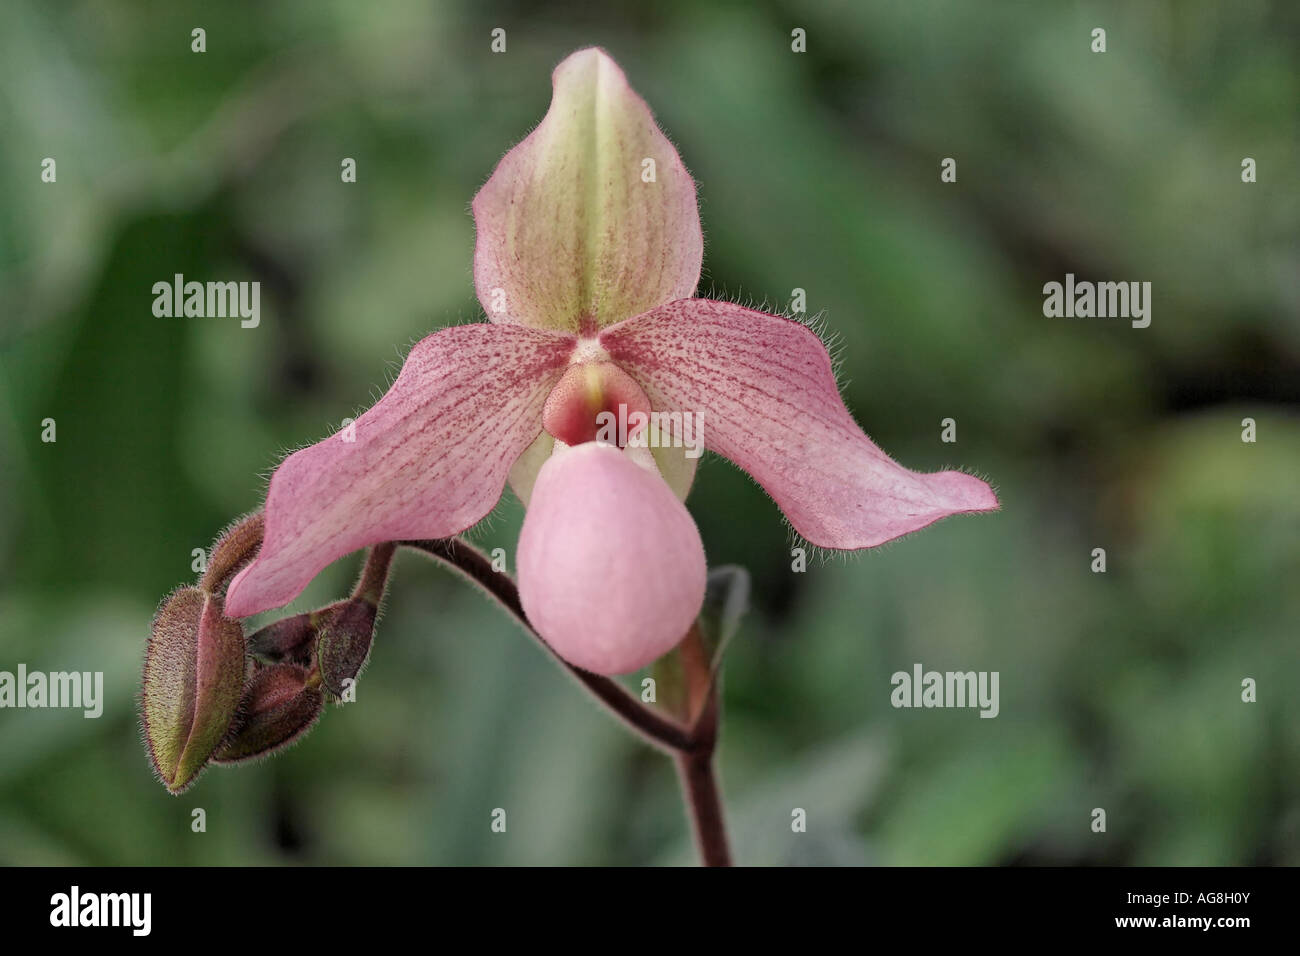 lady's slipper orchid (Paphiopedilum 'Crinoline de Valec', Paphiopedilum Crinoline de Valec), flower Stock Photo